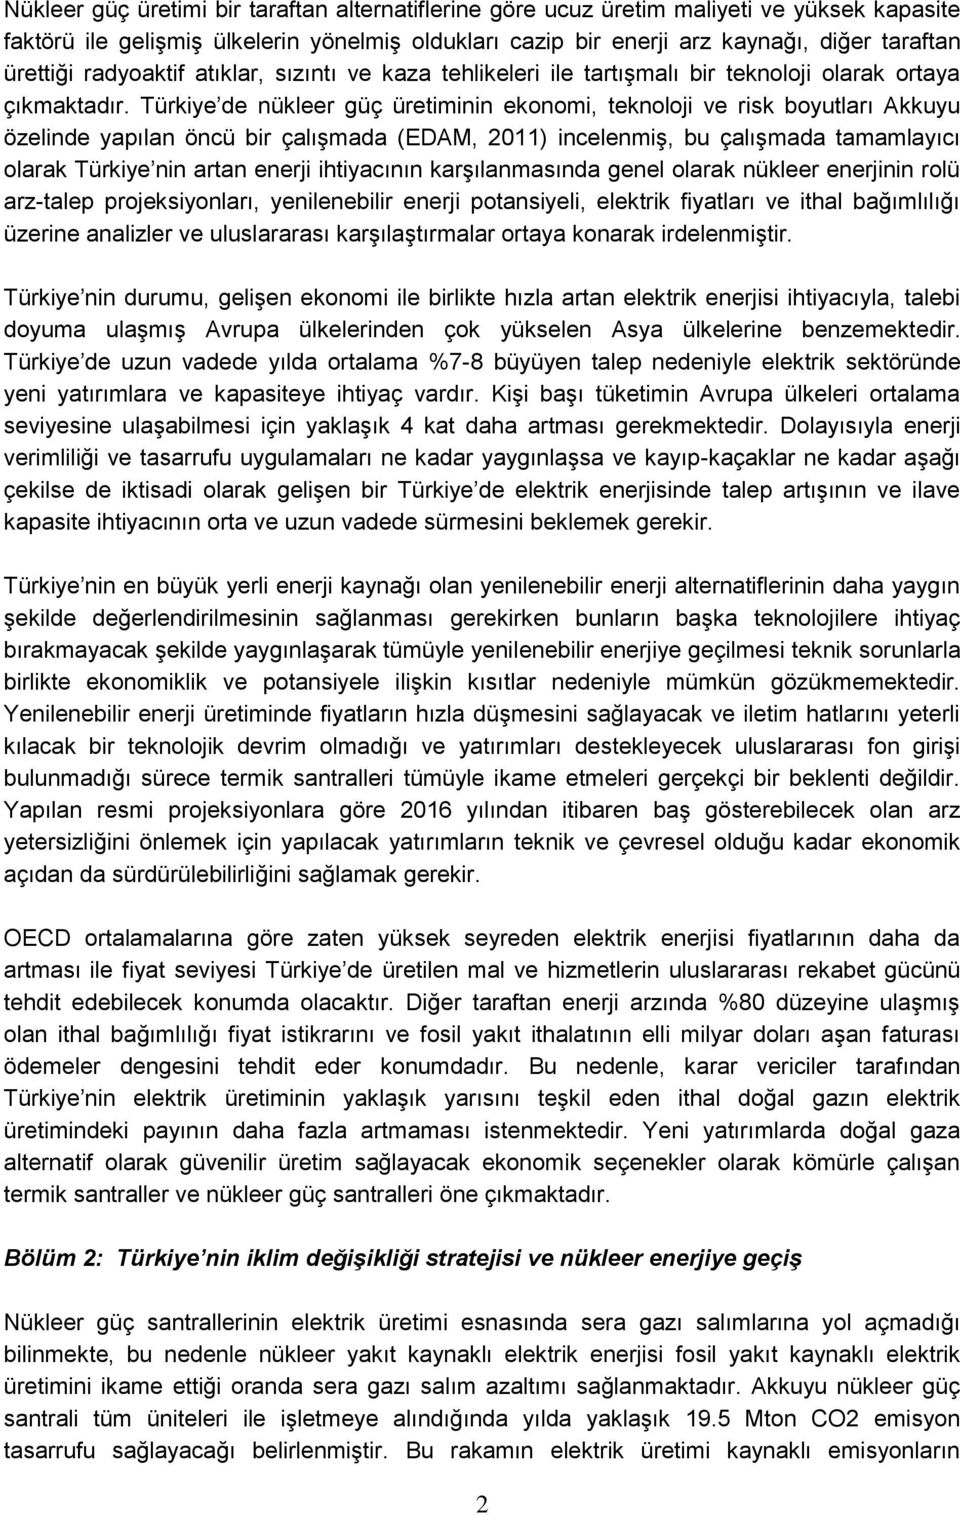 Türkiye de nükleer güç üretiminin ekonomi, teknoloji ve risk boyutları Akkuyu özelinde yapılan öncü bir çalışmada (EDAM, 2011) incelenmiş, bu çalışmada tamamlayıcı olarak Türkiye nin artan enerji